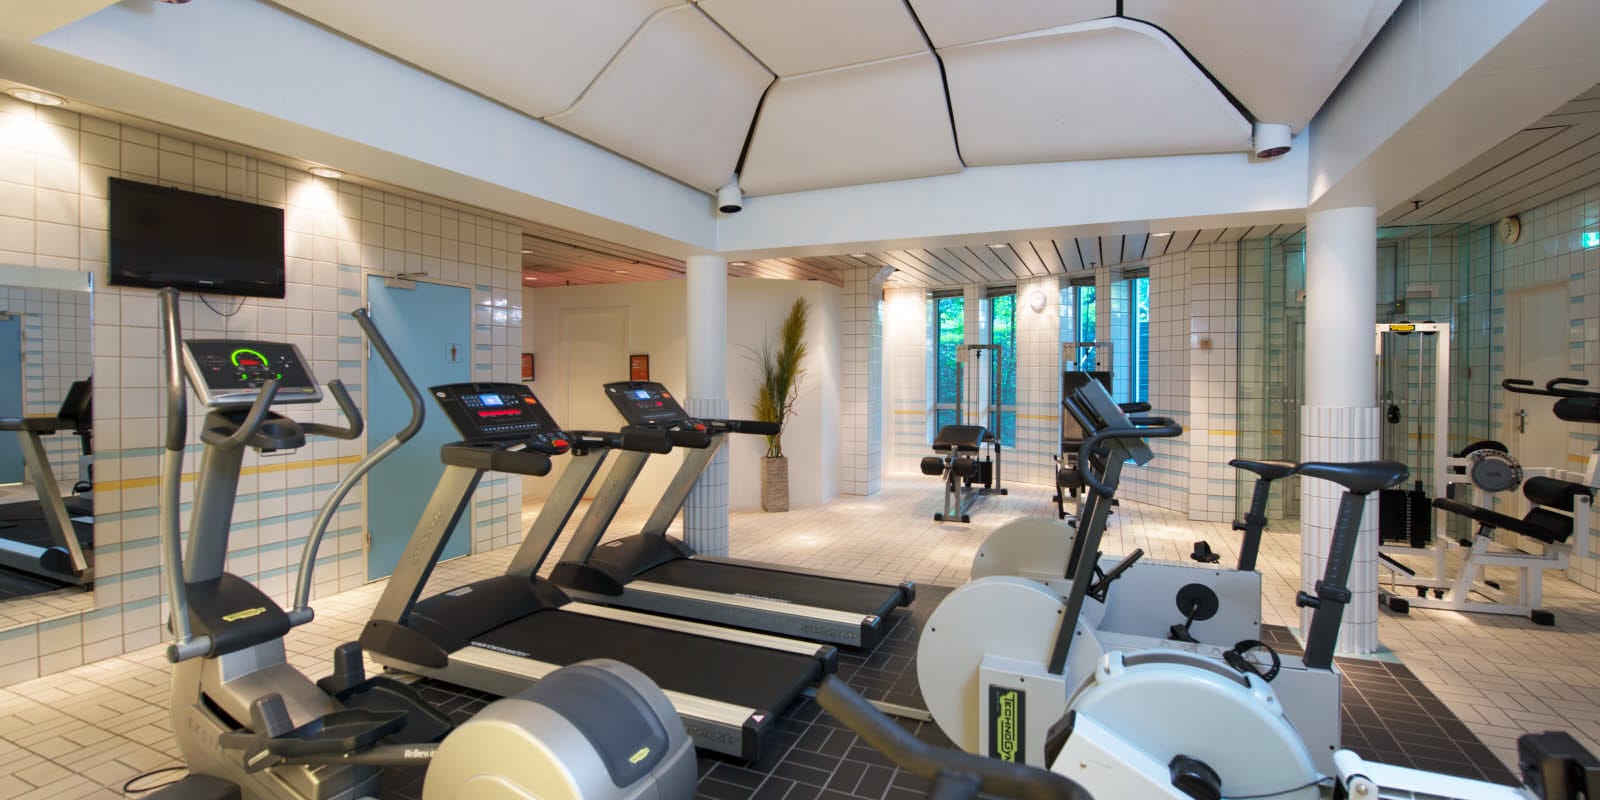 på Thon Hotel Oslofjord med träningsmaskiner, bland annat motionscykel och löpband